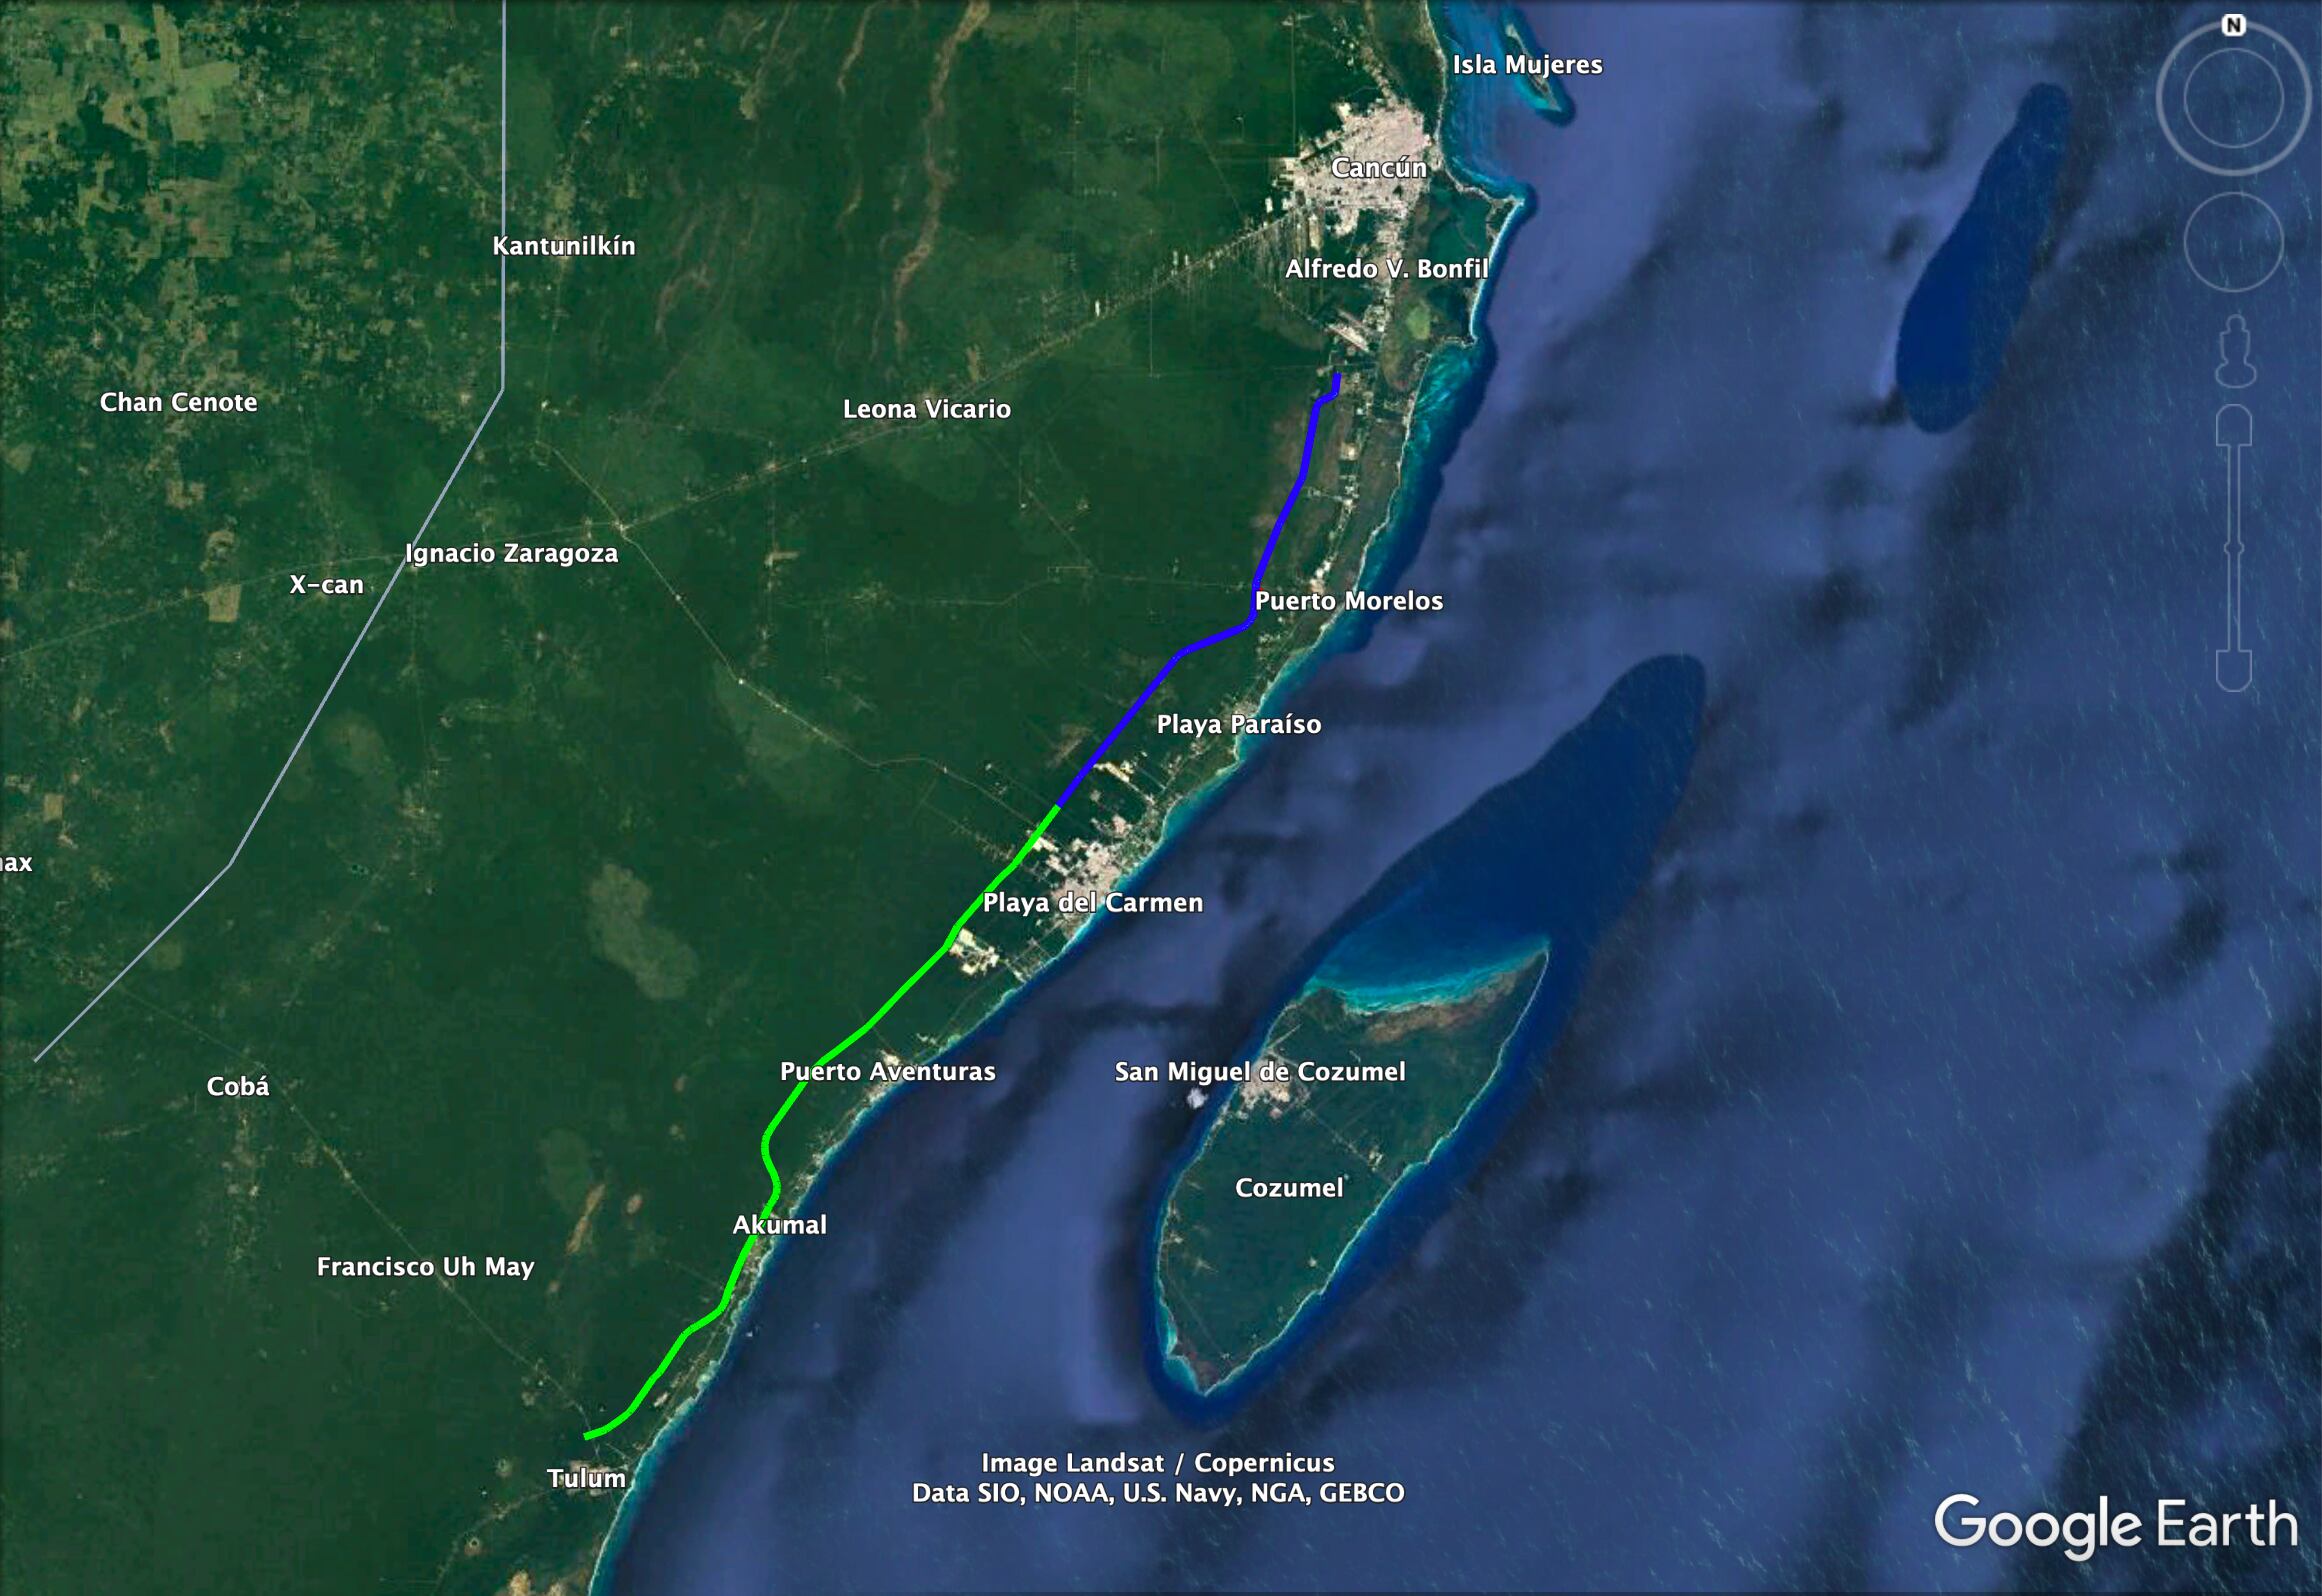 Mapa filtrado con el supuesto nuevo trazo del Tren Maya. En azul, el tramo 5 norte, que va desde Cancún hasta Playa del Carmen; en verde, el que va de Playa del Carmen a Tulum.